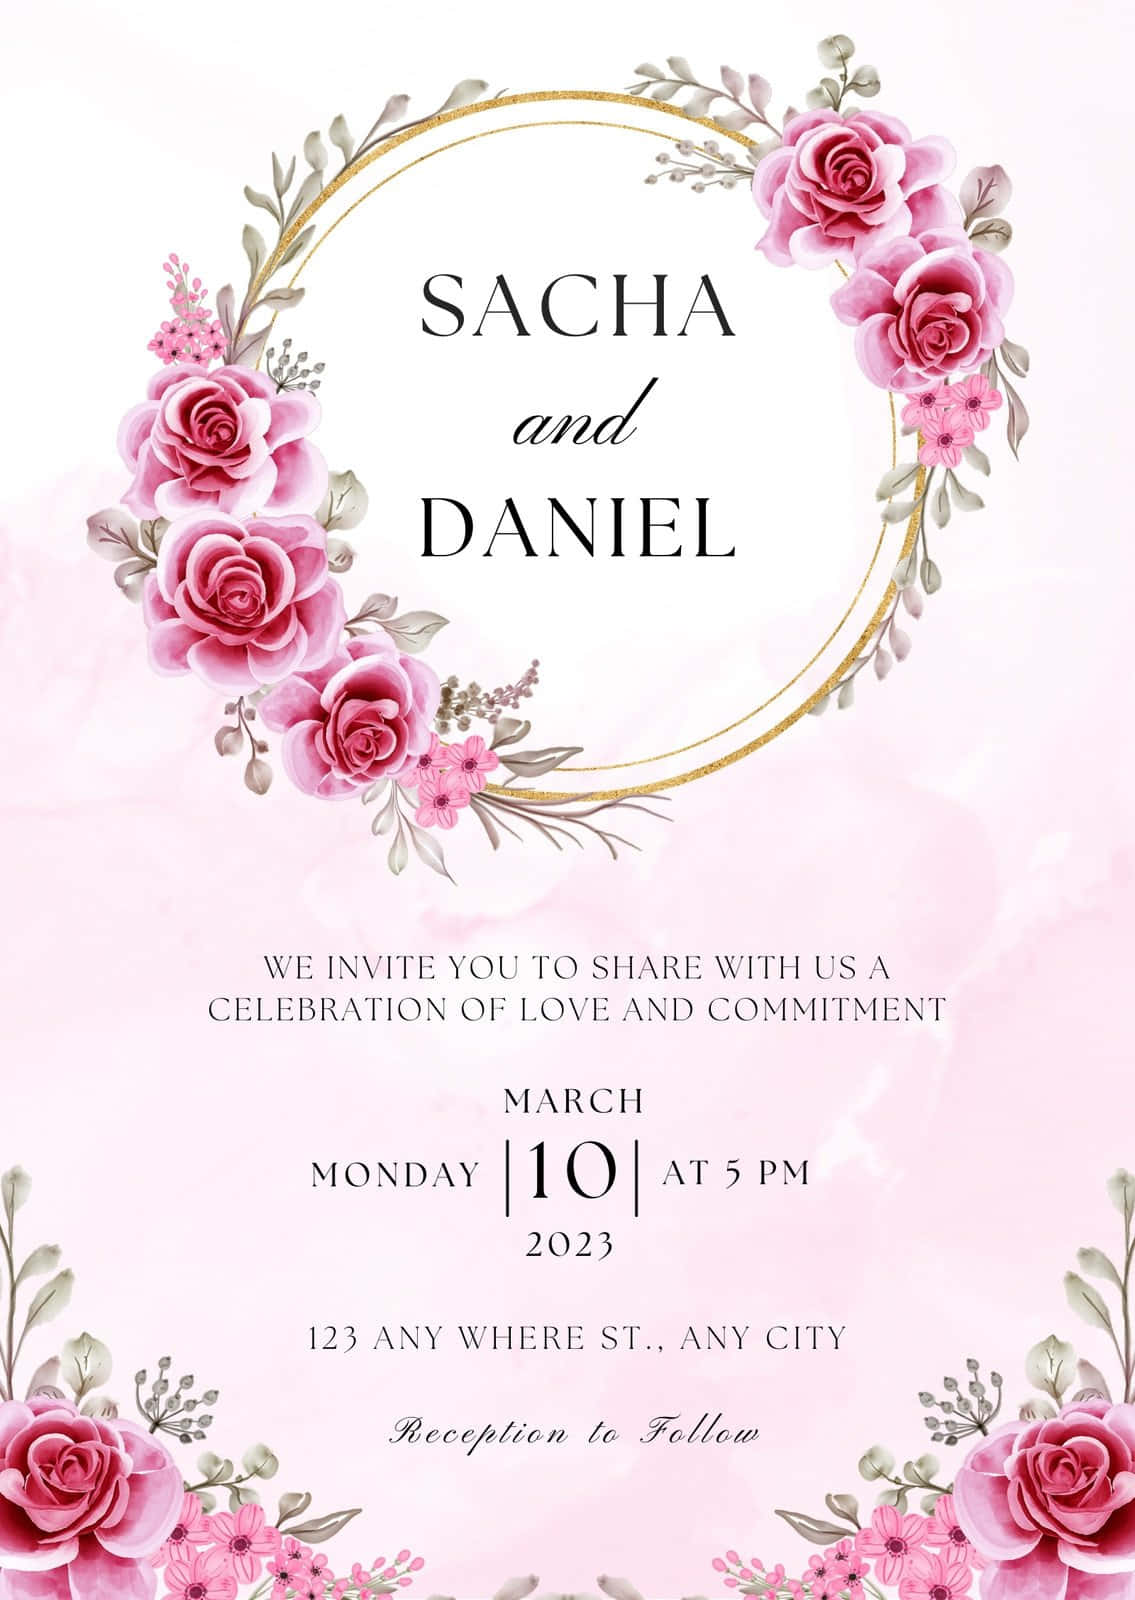 wedding invitation background designs pink